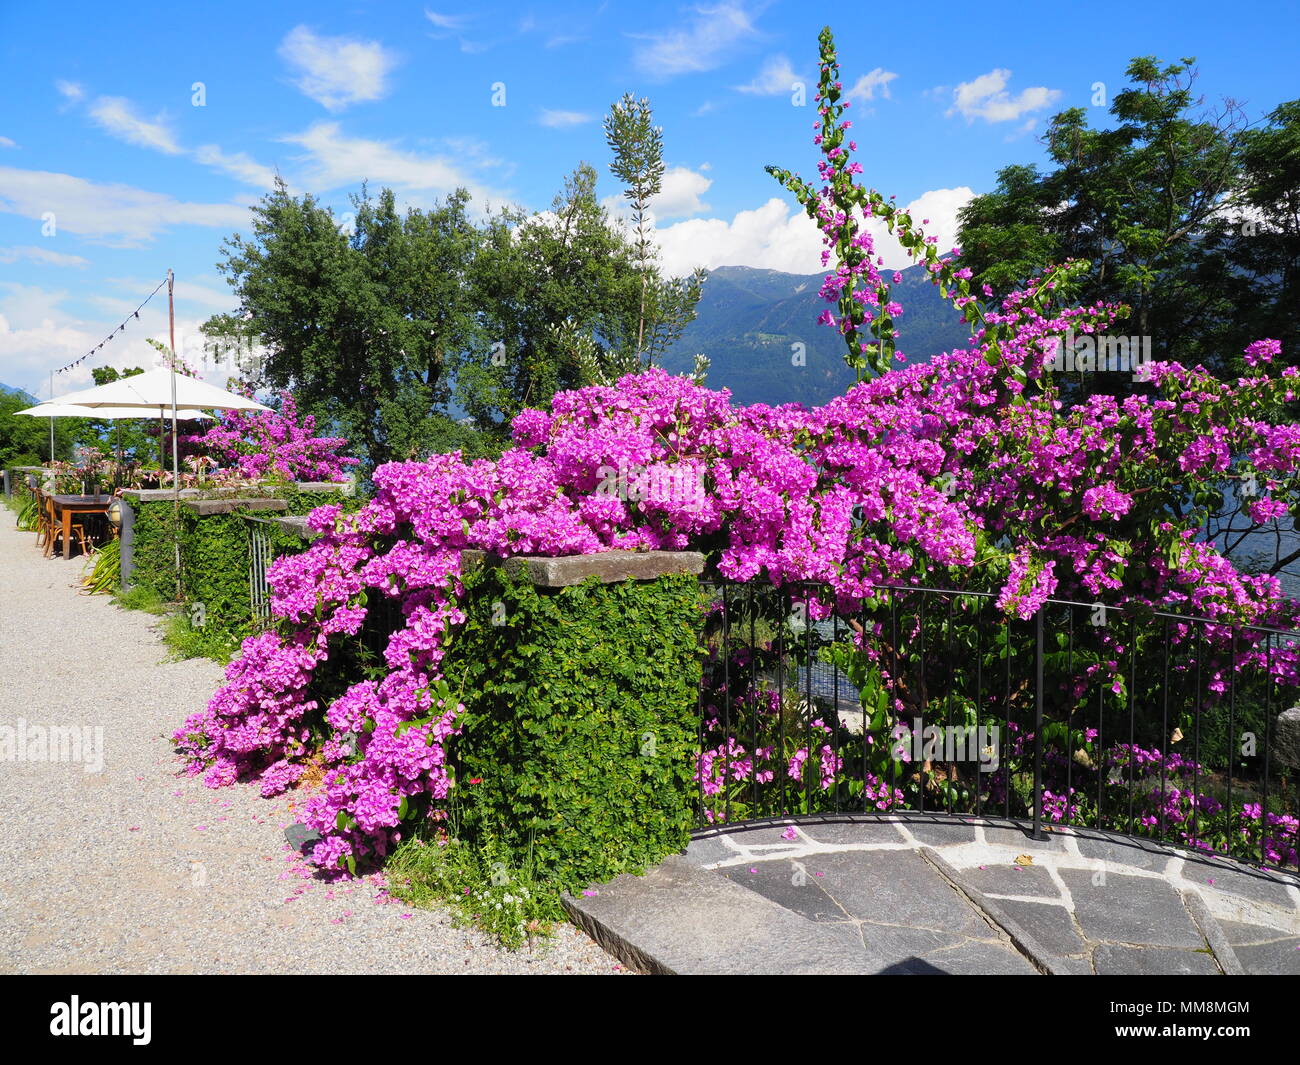 Bougainvillea violett Blumen, exotische Pflanzen der Insel Brissago,  Schweiz alpine Landschaften Blick auf Schweizer Lago Maggiore auf  europäischer Ascona Stadt, cle Stockfotografie - Alamy